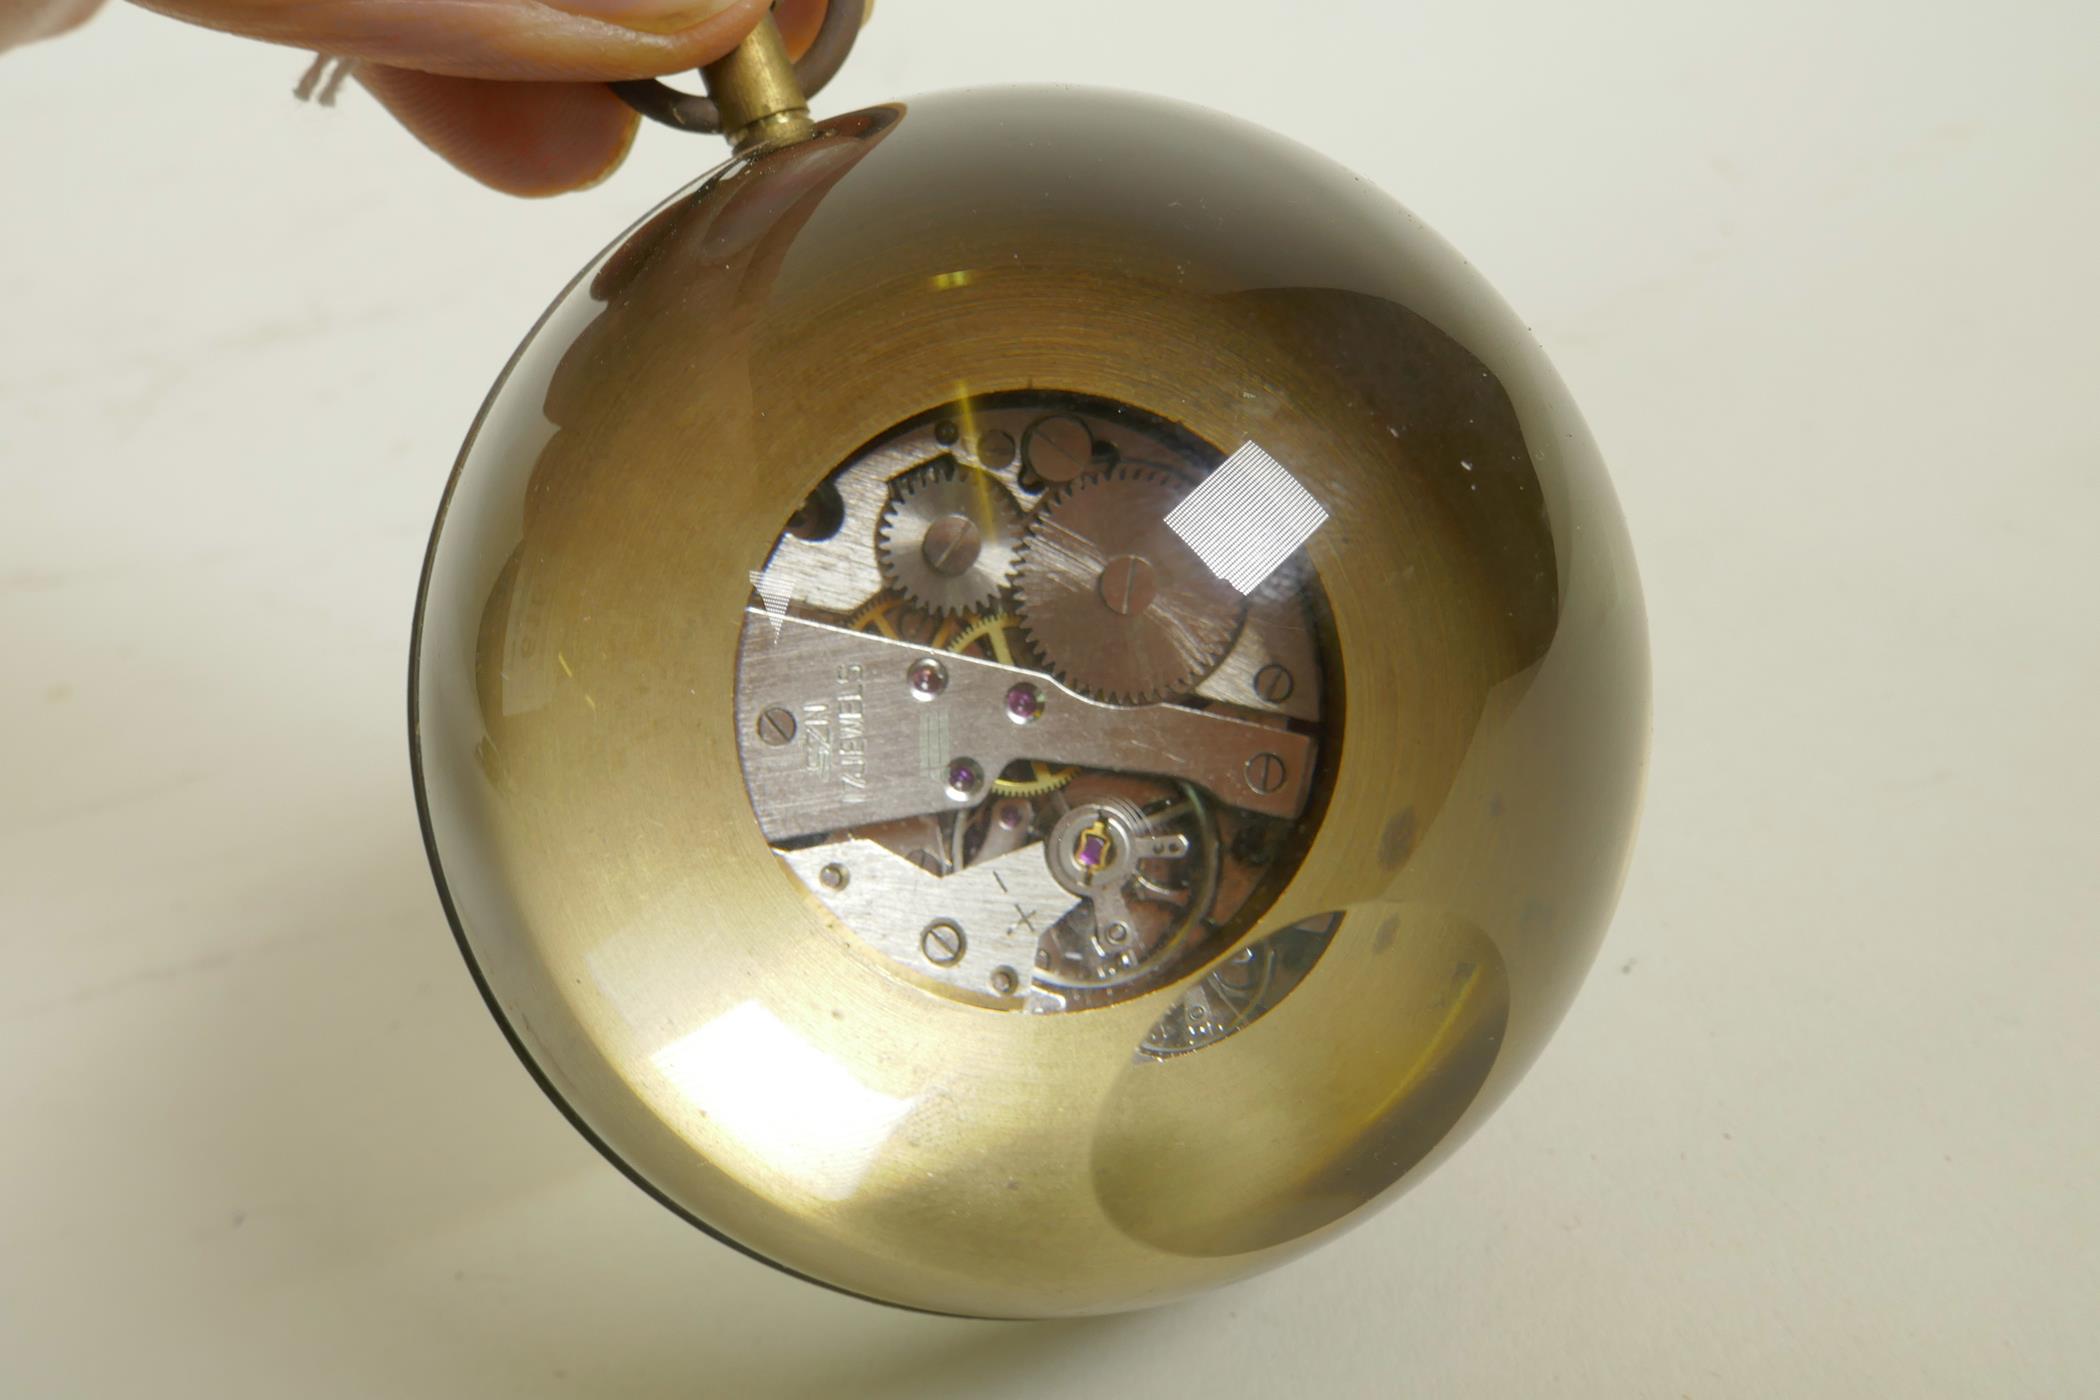 A glass ball desk, brass bound, clock, 3" diameter - Image 3 of 3